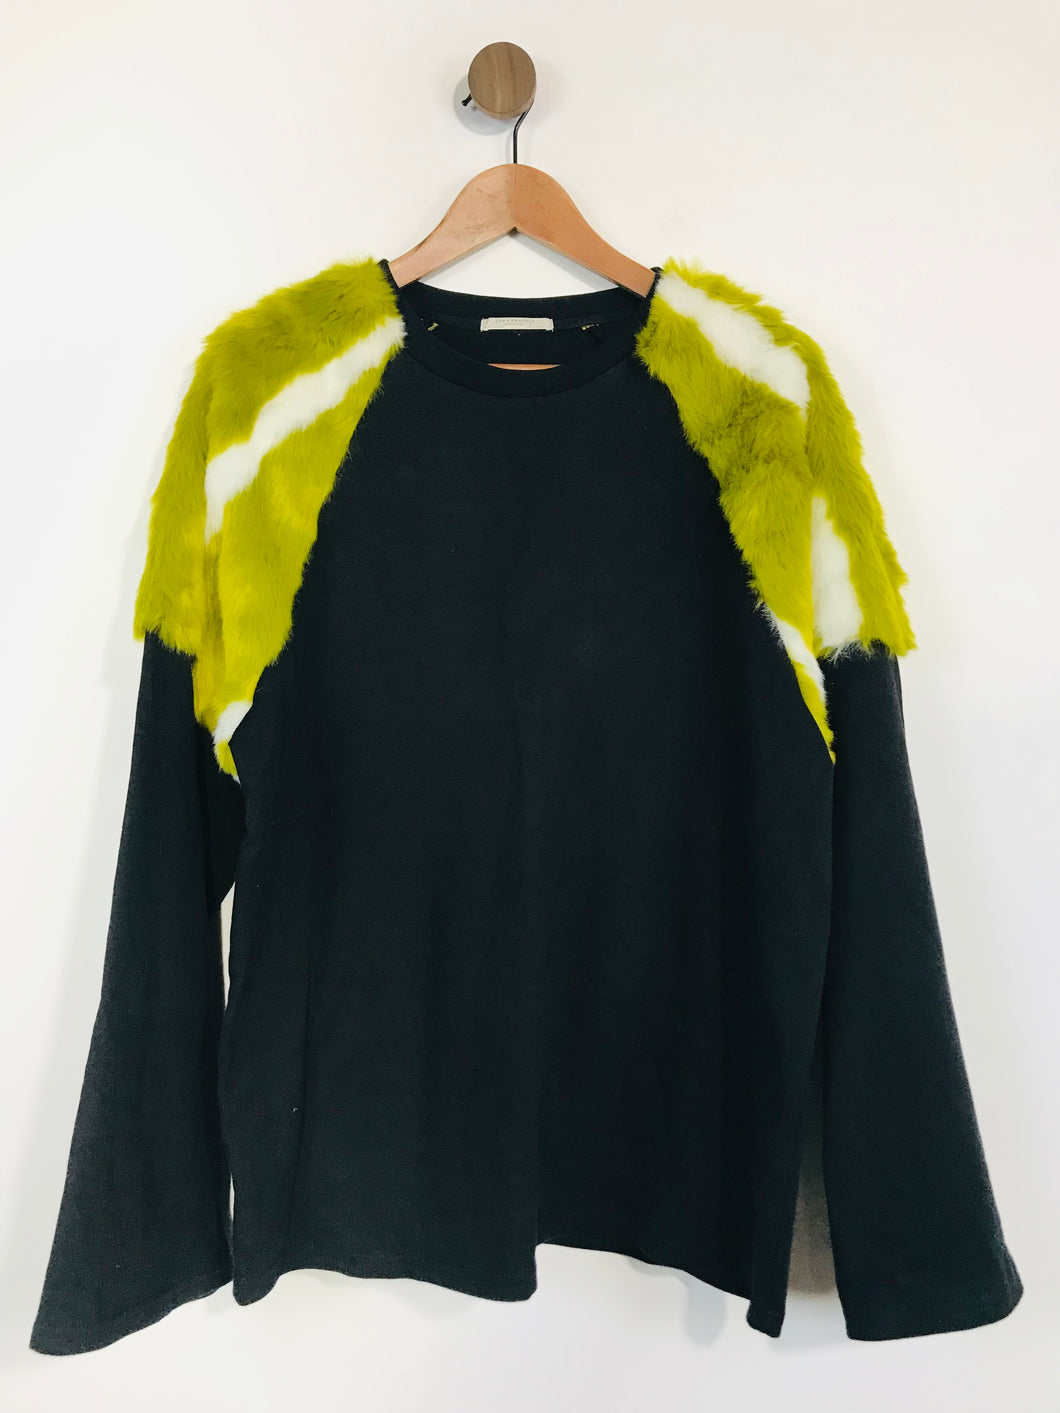 Zara Women's Contrast Faux Fur Sleeve Sweatshirt | M UK10-12 | Black